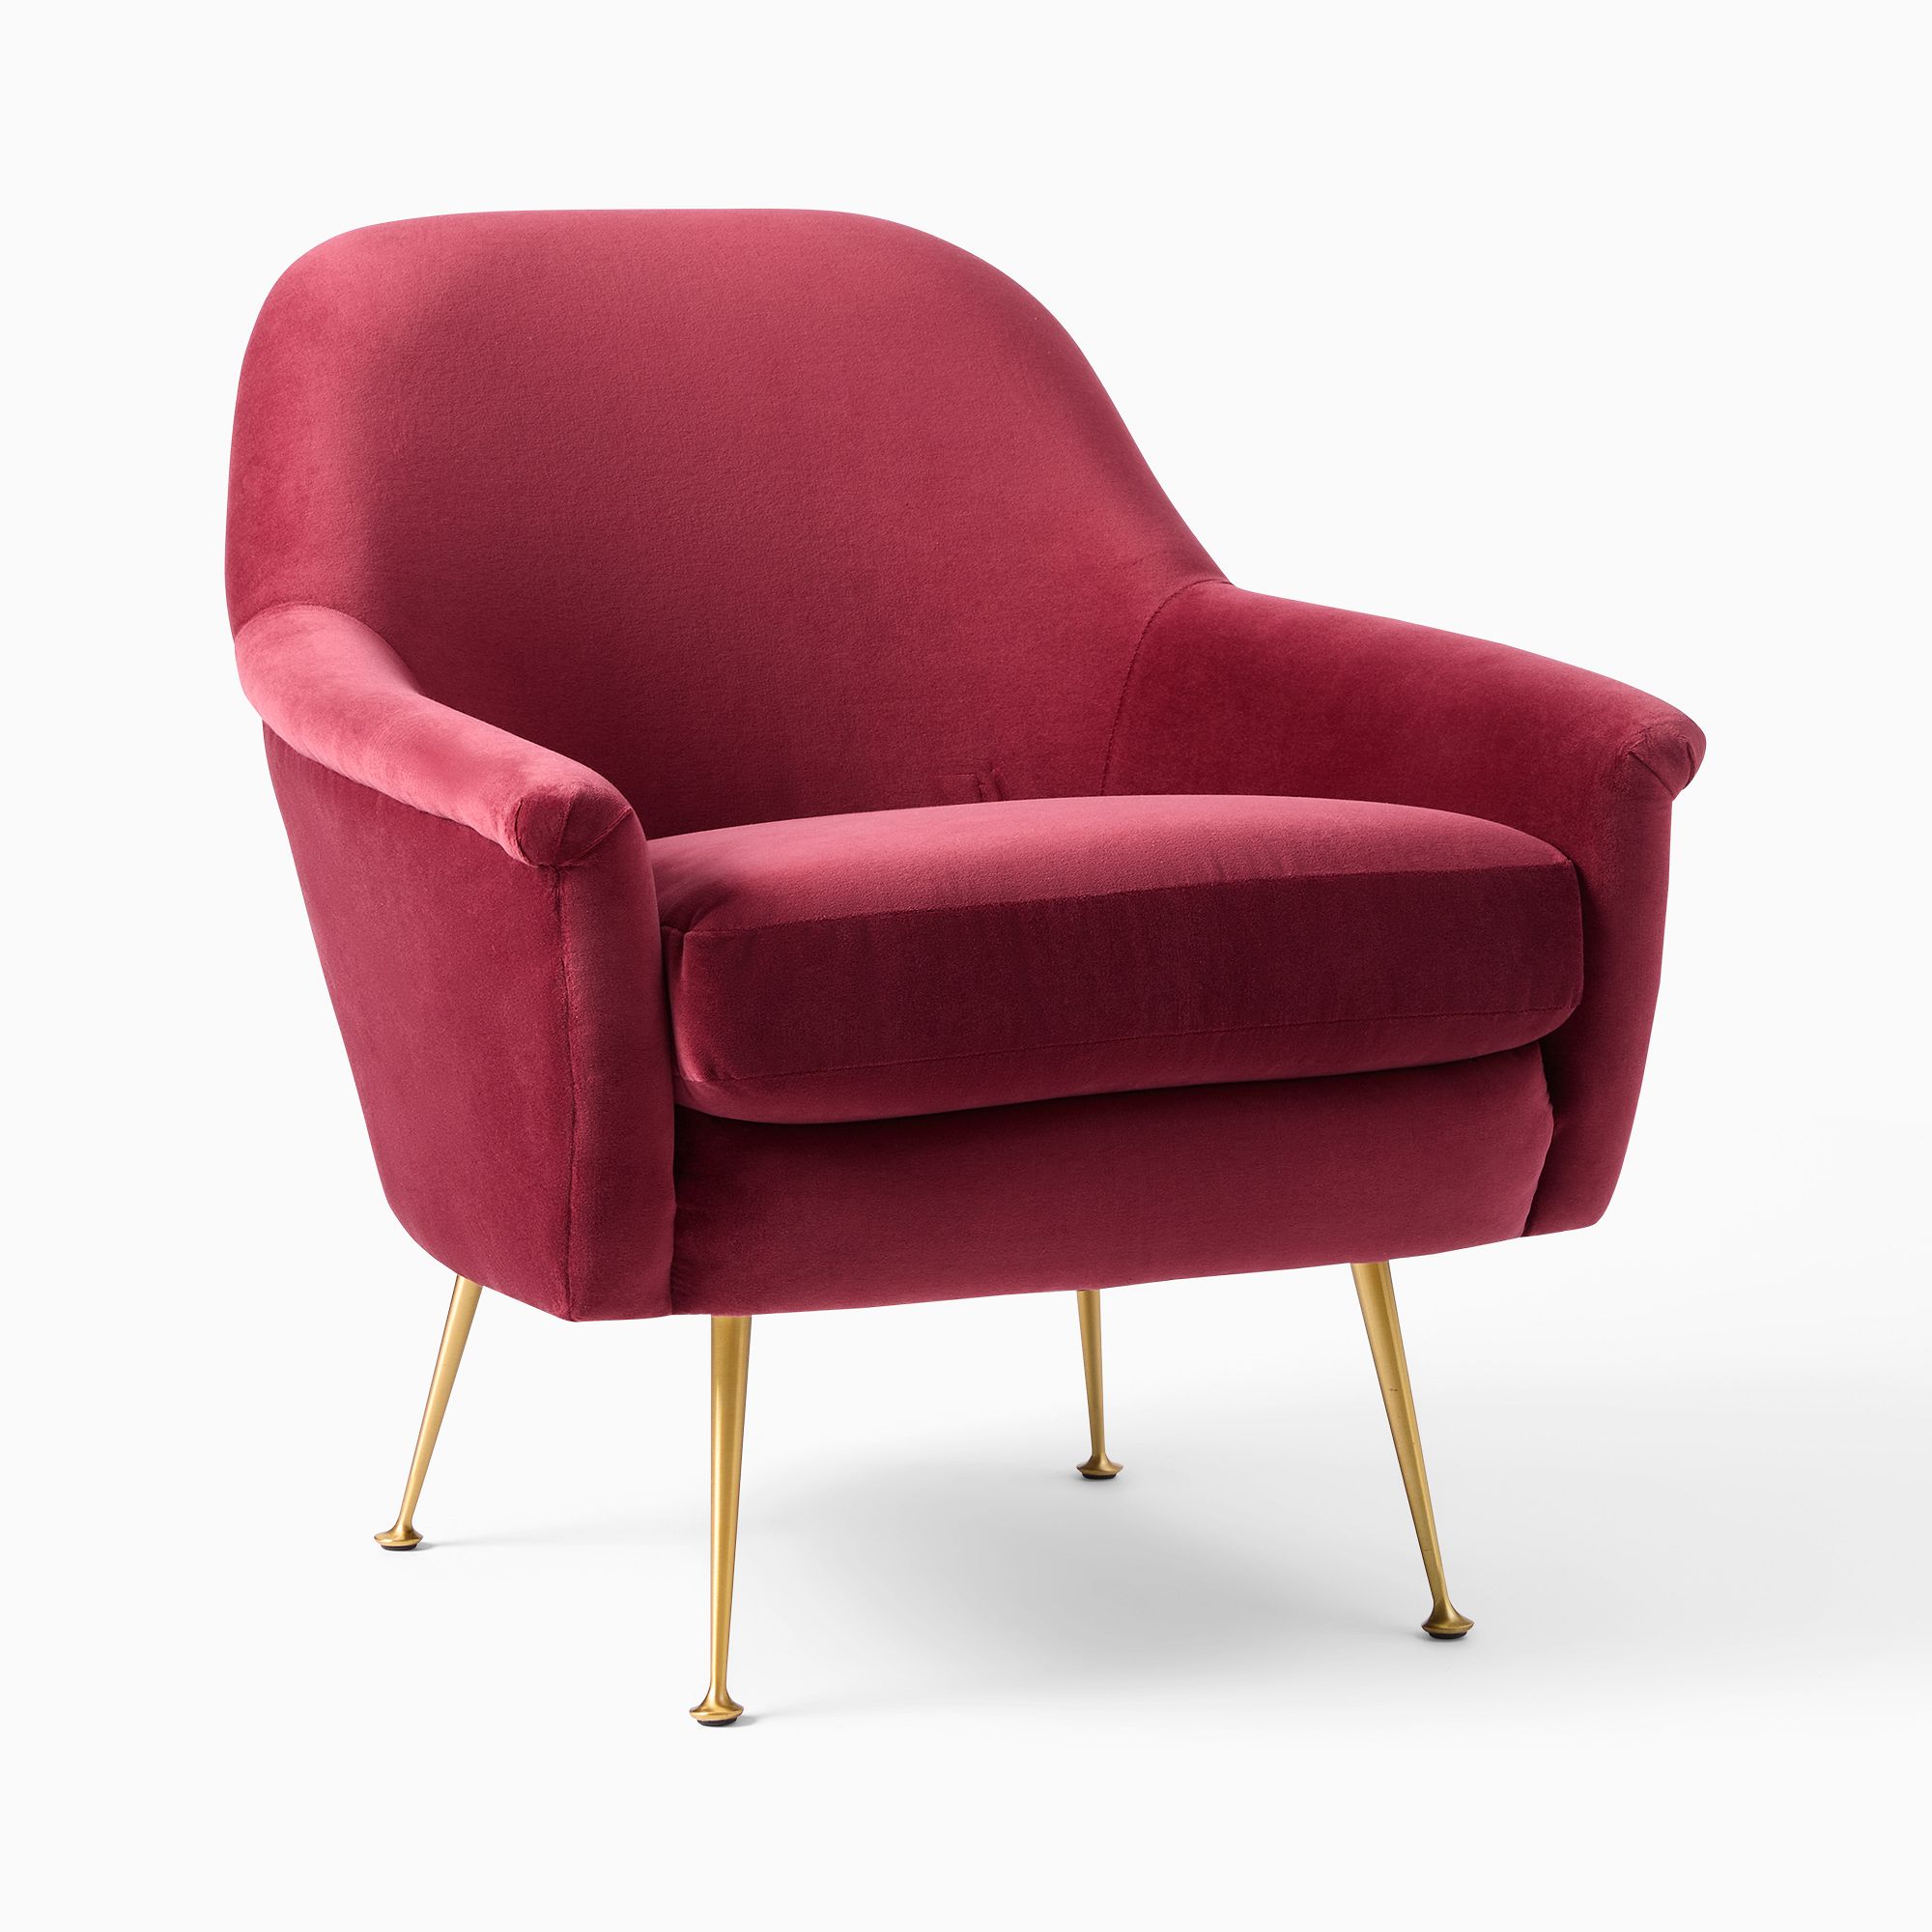 Phoebe Chair (Oxblood) - Metal Legs | West Elm